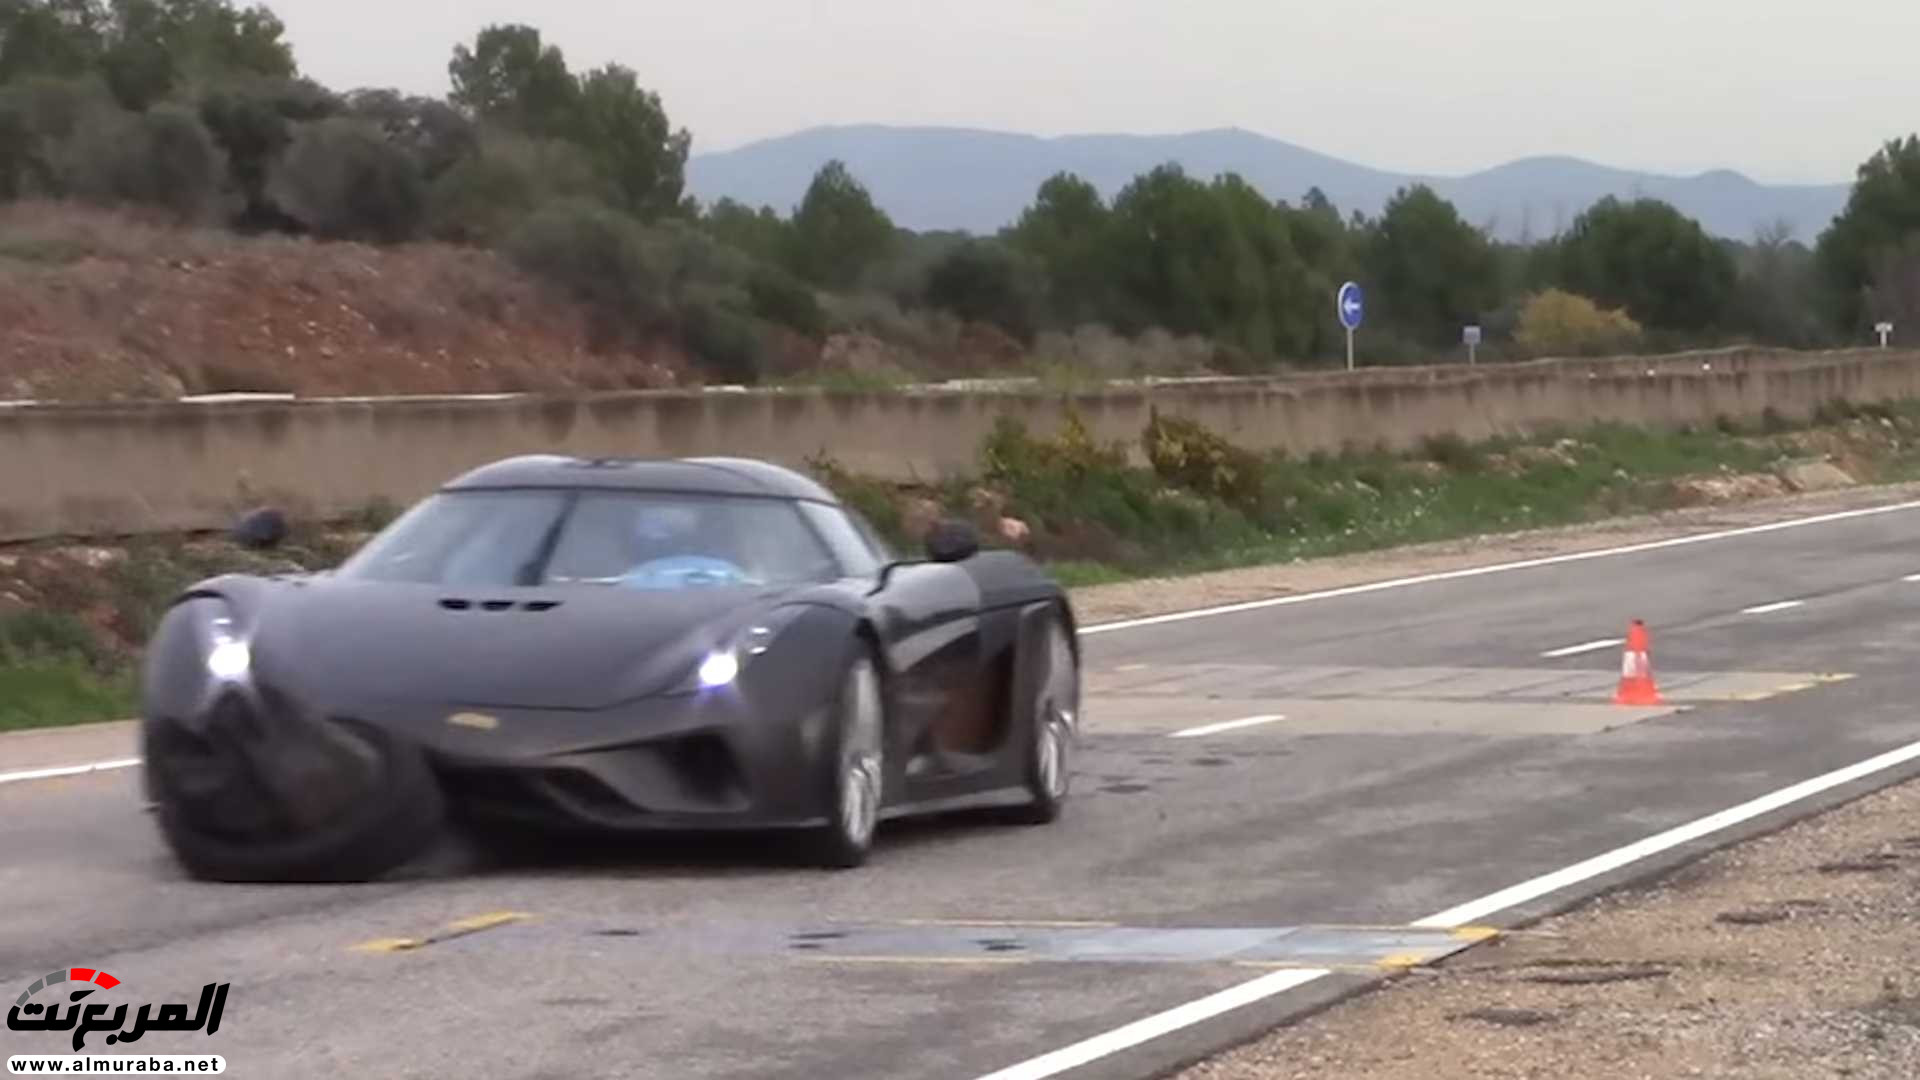 "بالفيديو" اختبار تصادم سيارة كوينيجسيج بقيمة 7.5 مليون ريال! 7